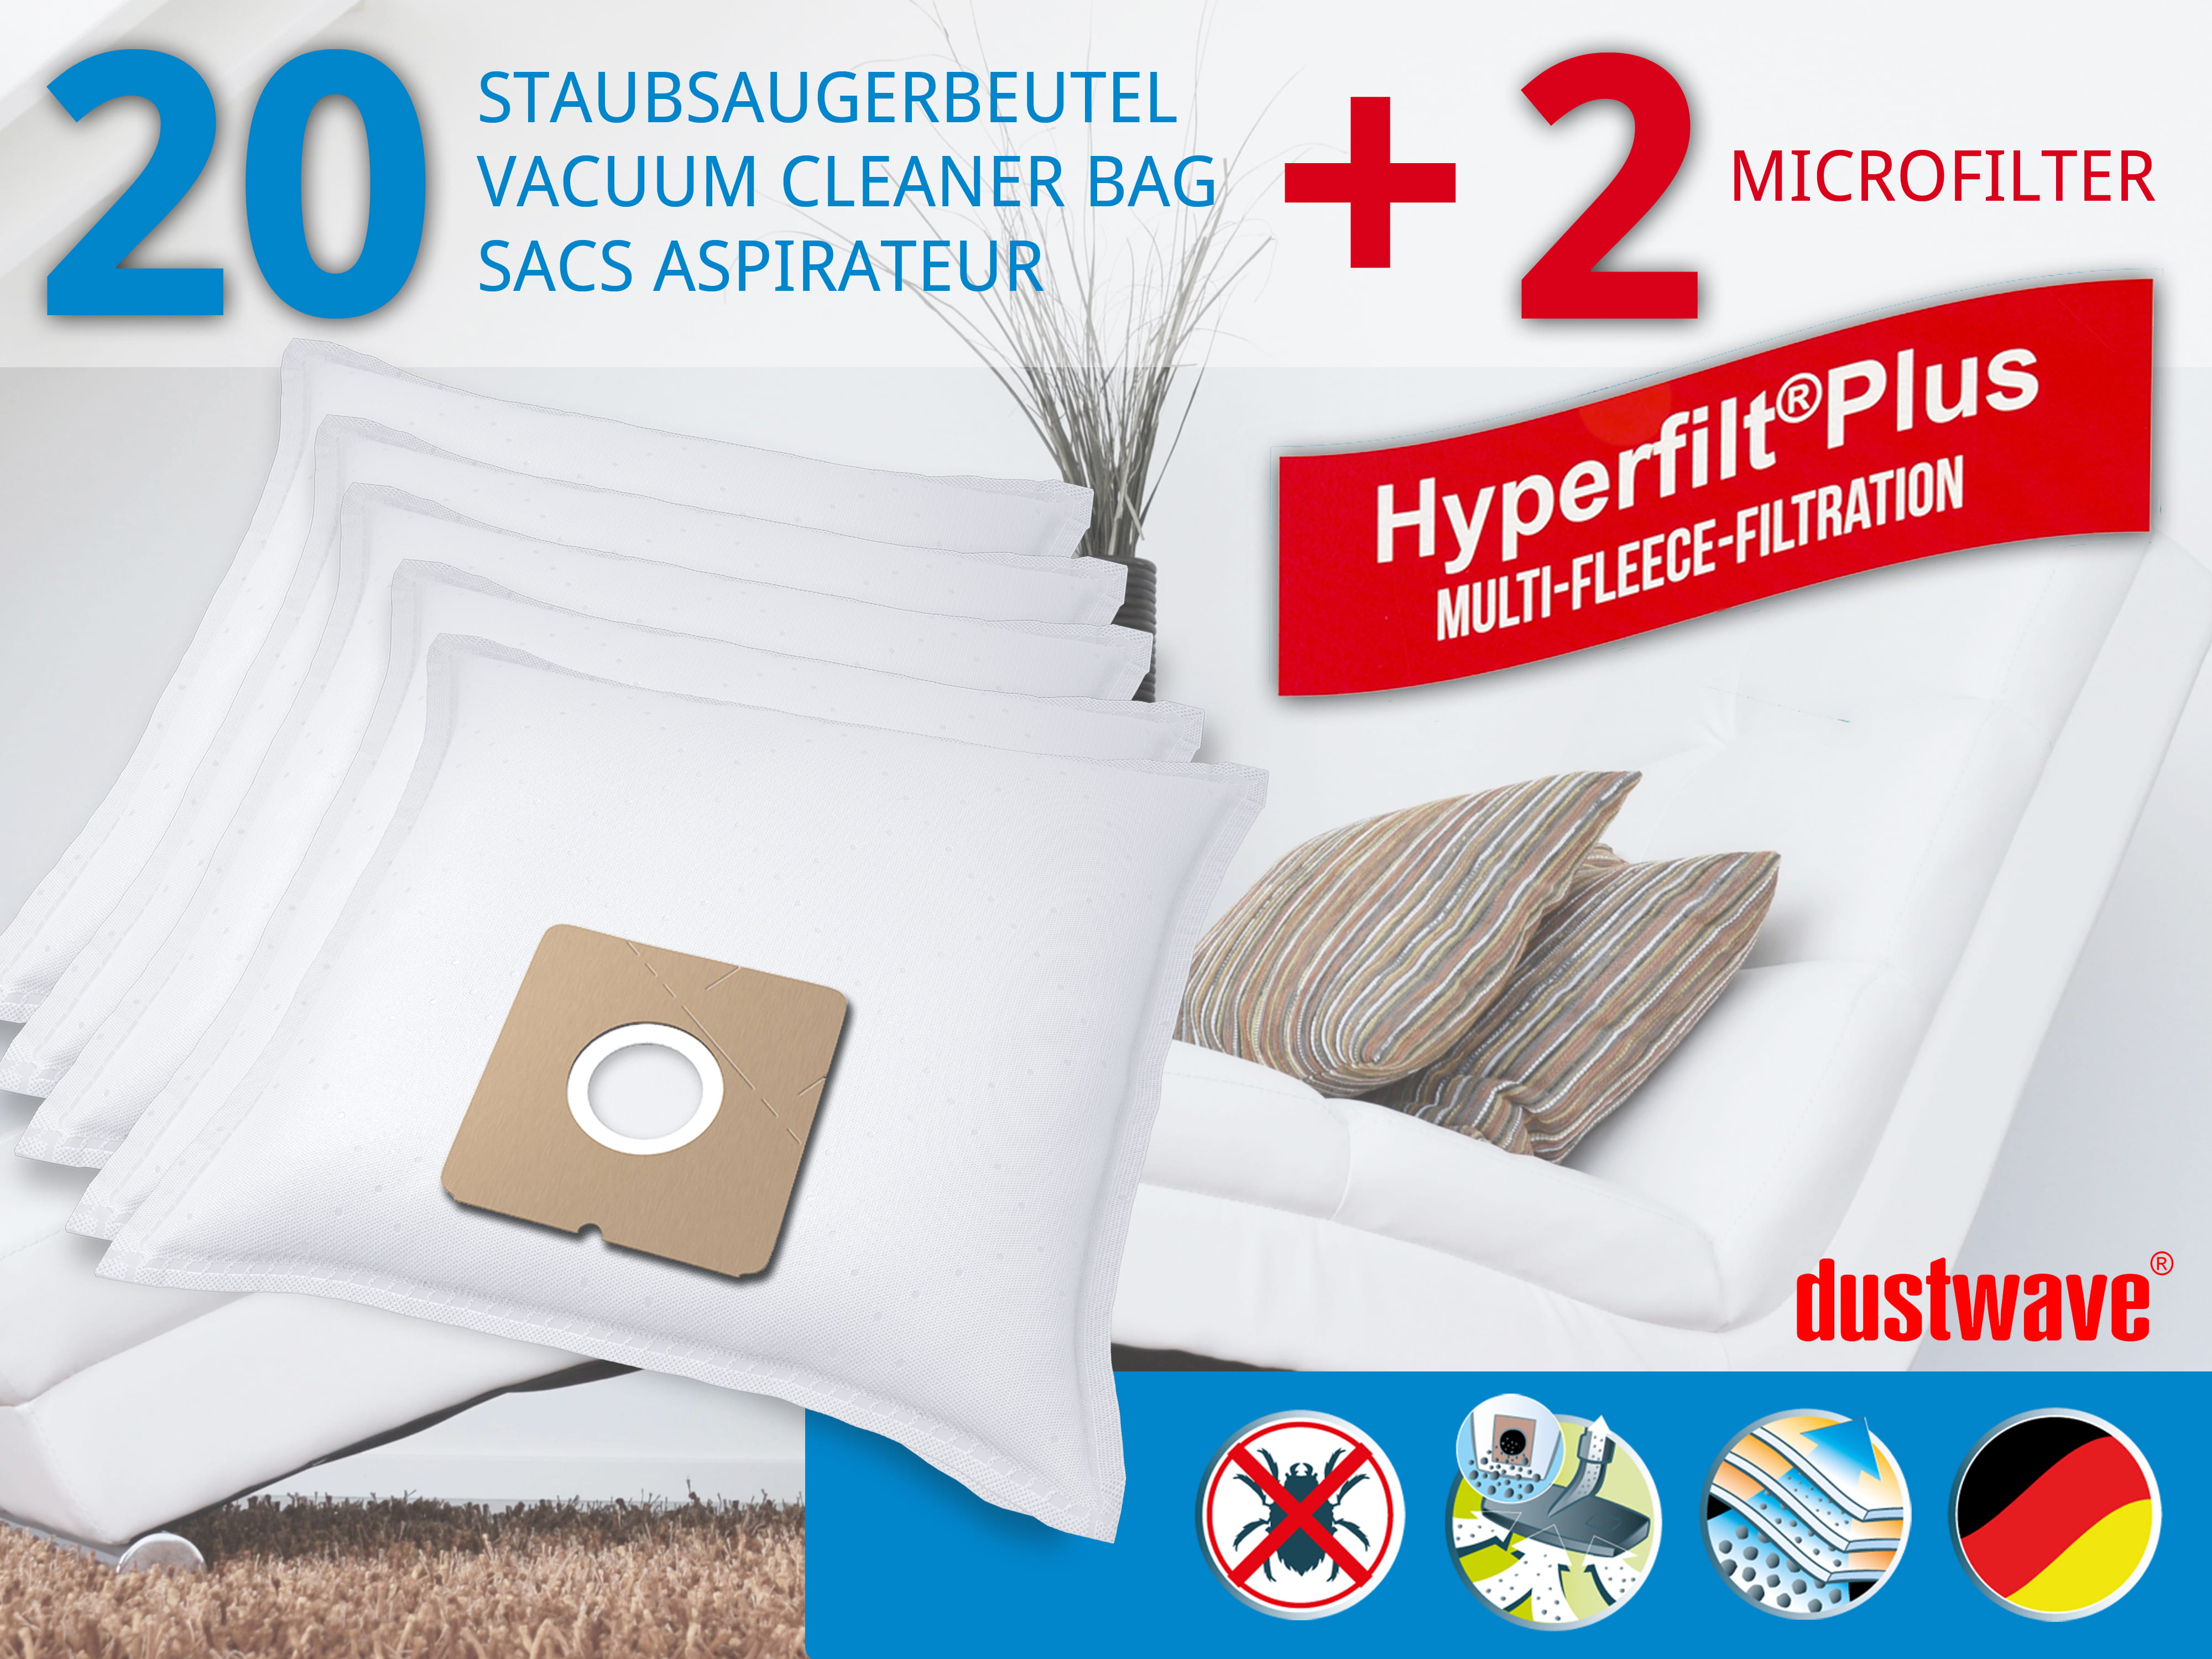 Dustwave® 20 Staubsaugerbeutel für Arc En Ciel - Boosty 1400 W - hocheffizient, mehrlagiges Mikrovlies mit Hygieneverschluss - Made in Germany